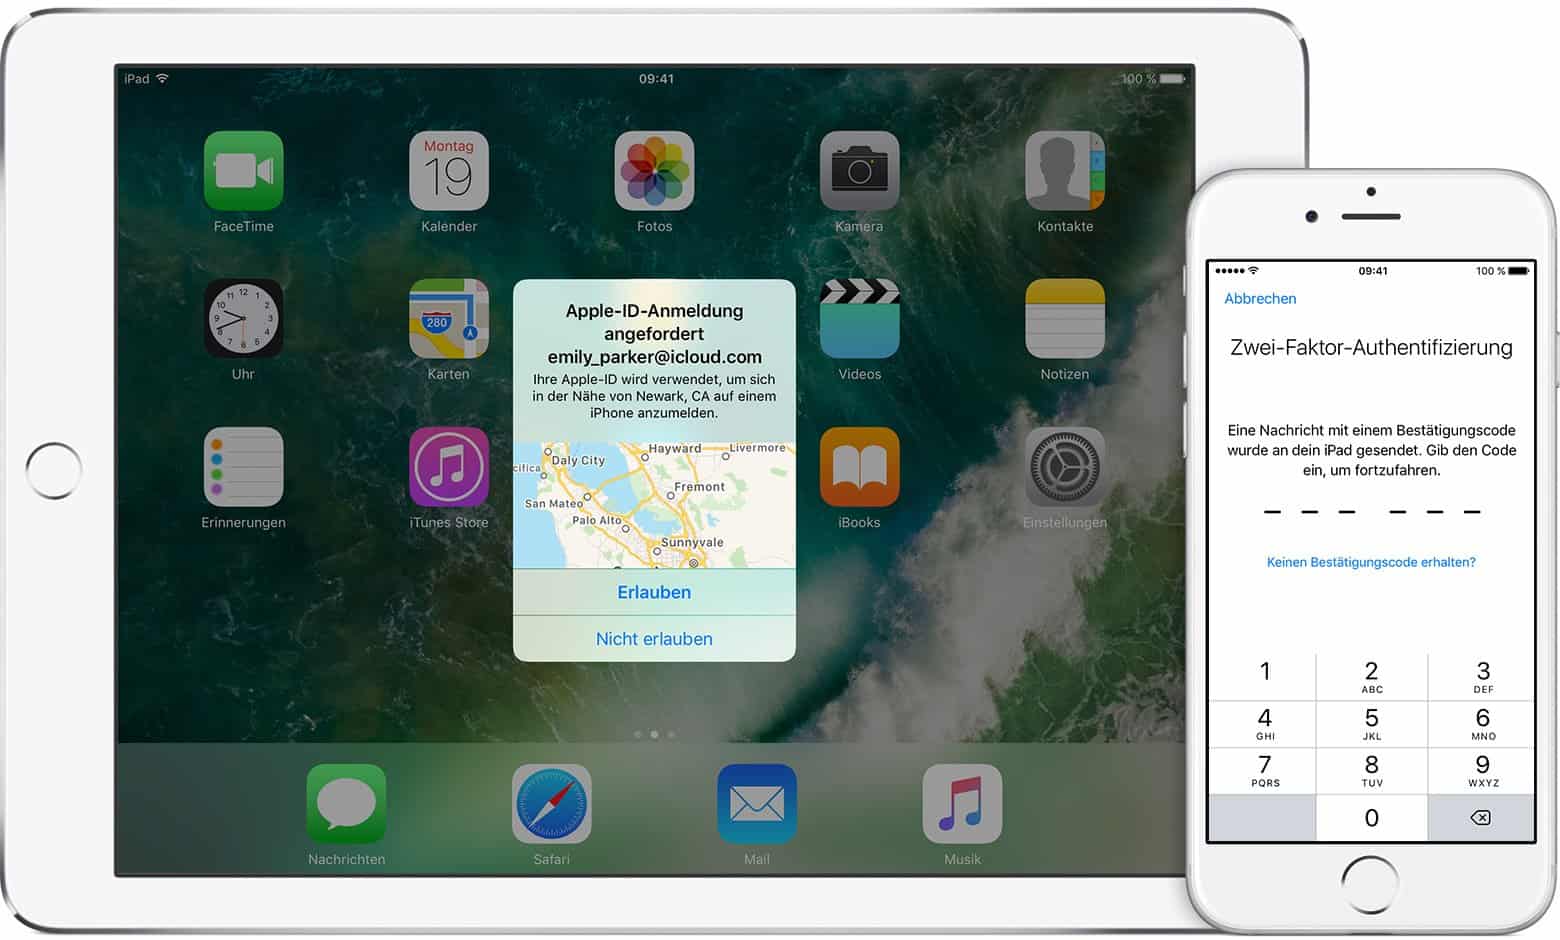 Apple - iPad, iPhone - Verifikation - Login